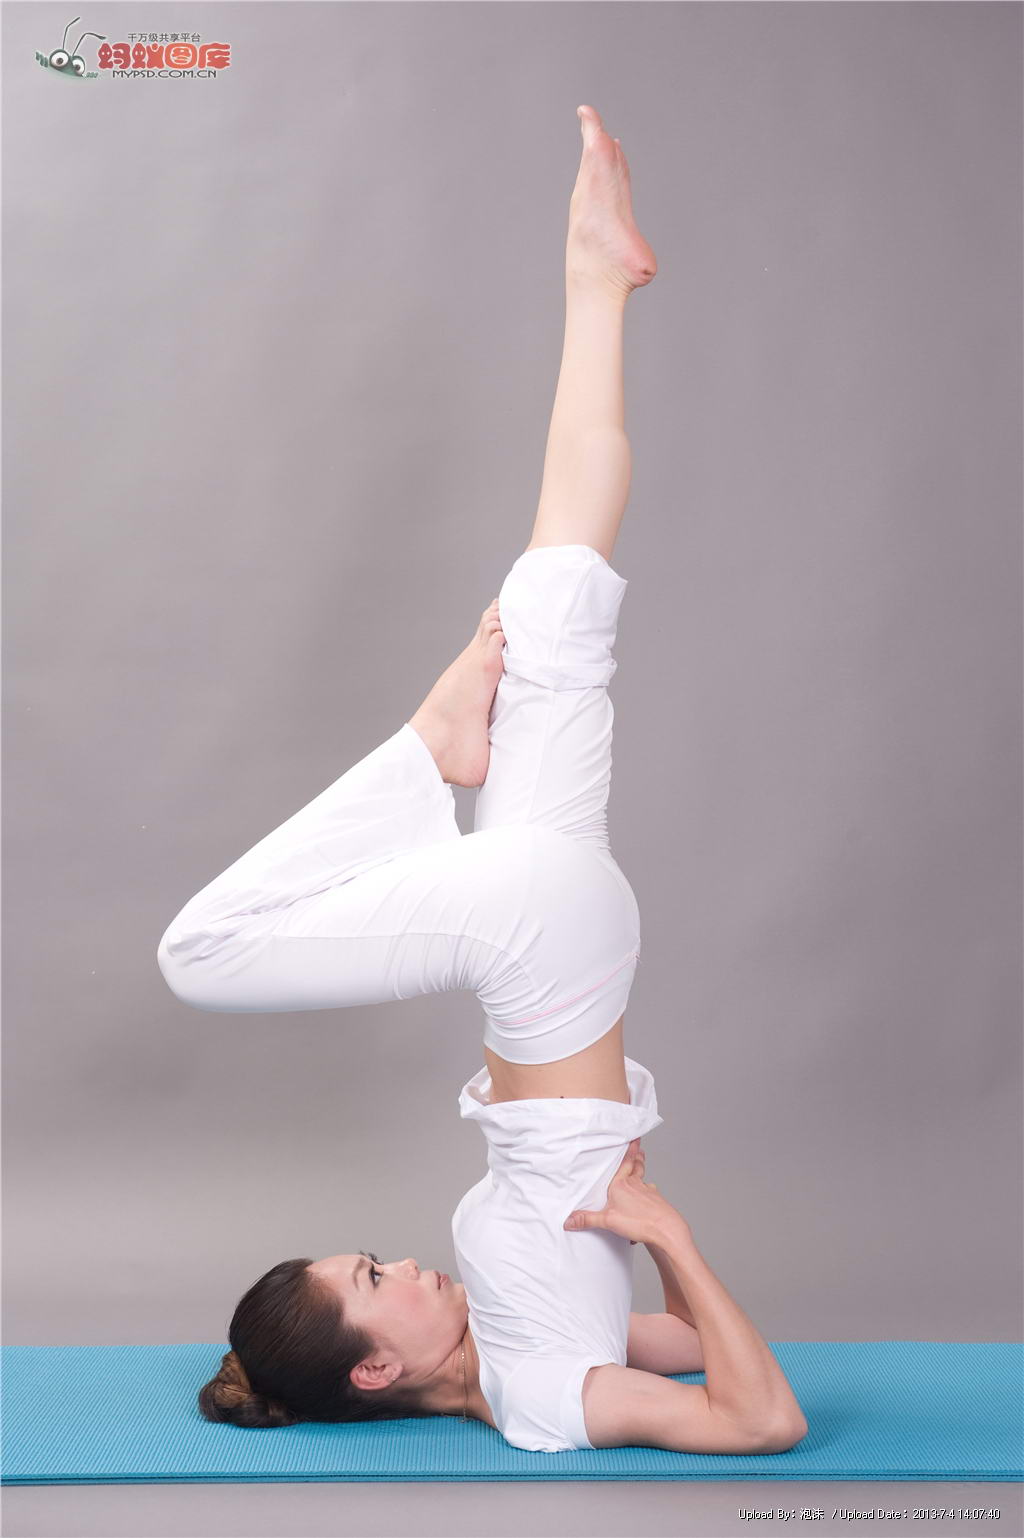 乌鲁木齐瑜伽健身培训虎伸展式帮你瘦腰又提臀